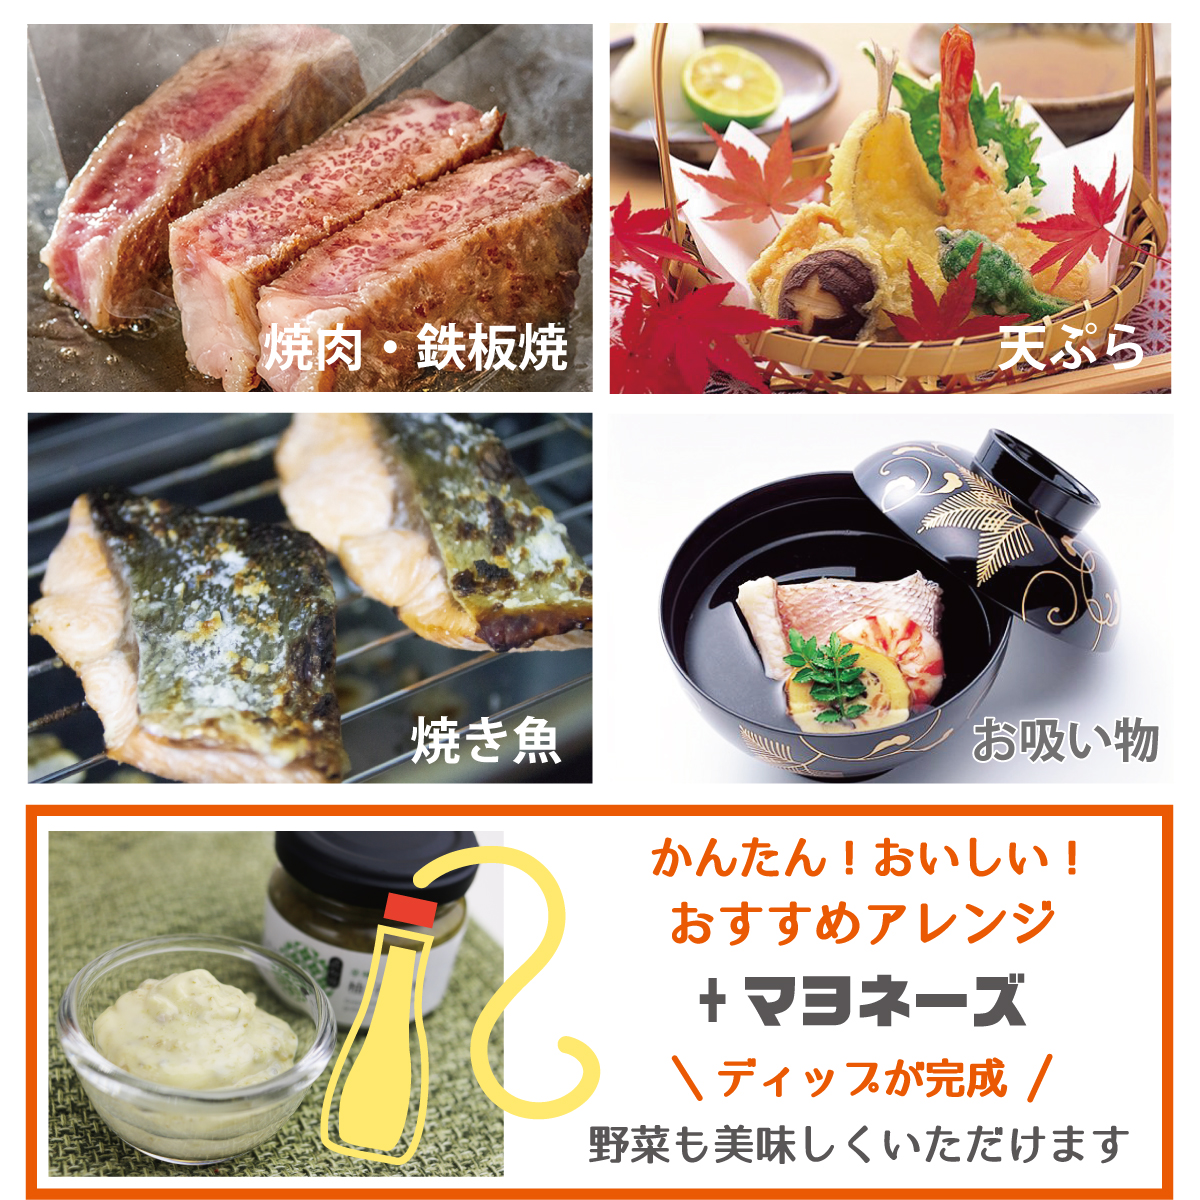 柚子胡椒+焼肉・鉄板焼き・天ぷら・焼き魚・お吸い物・アレンジにマヨネーズ